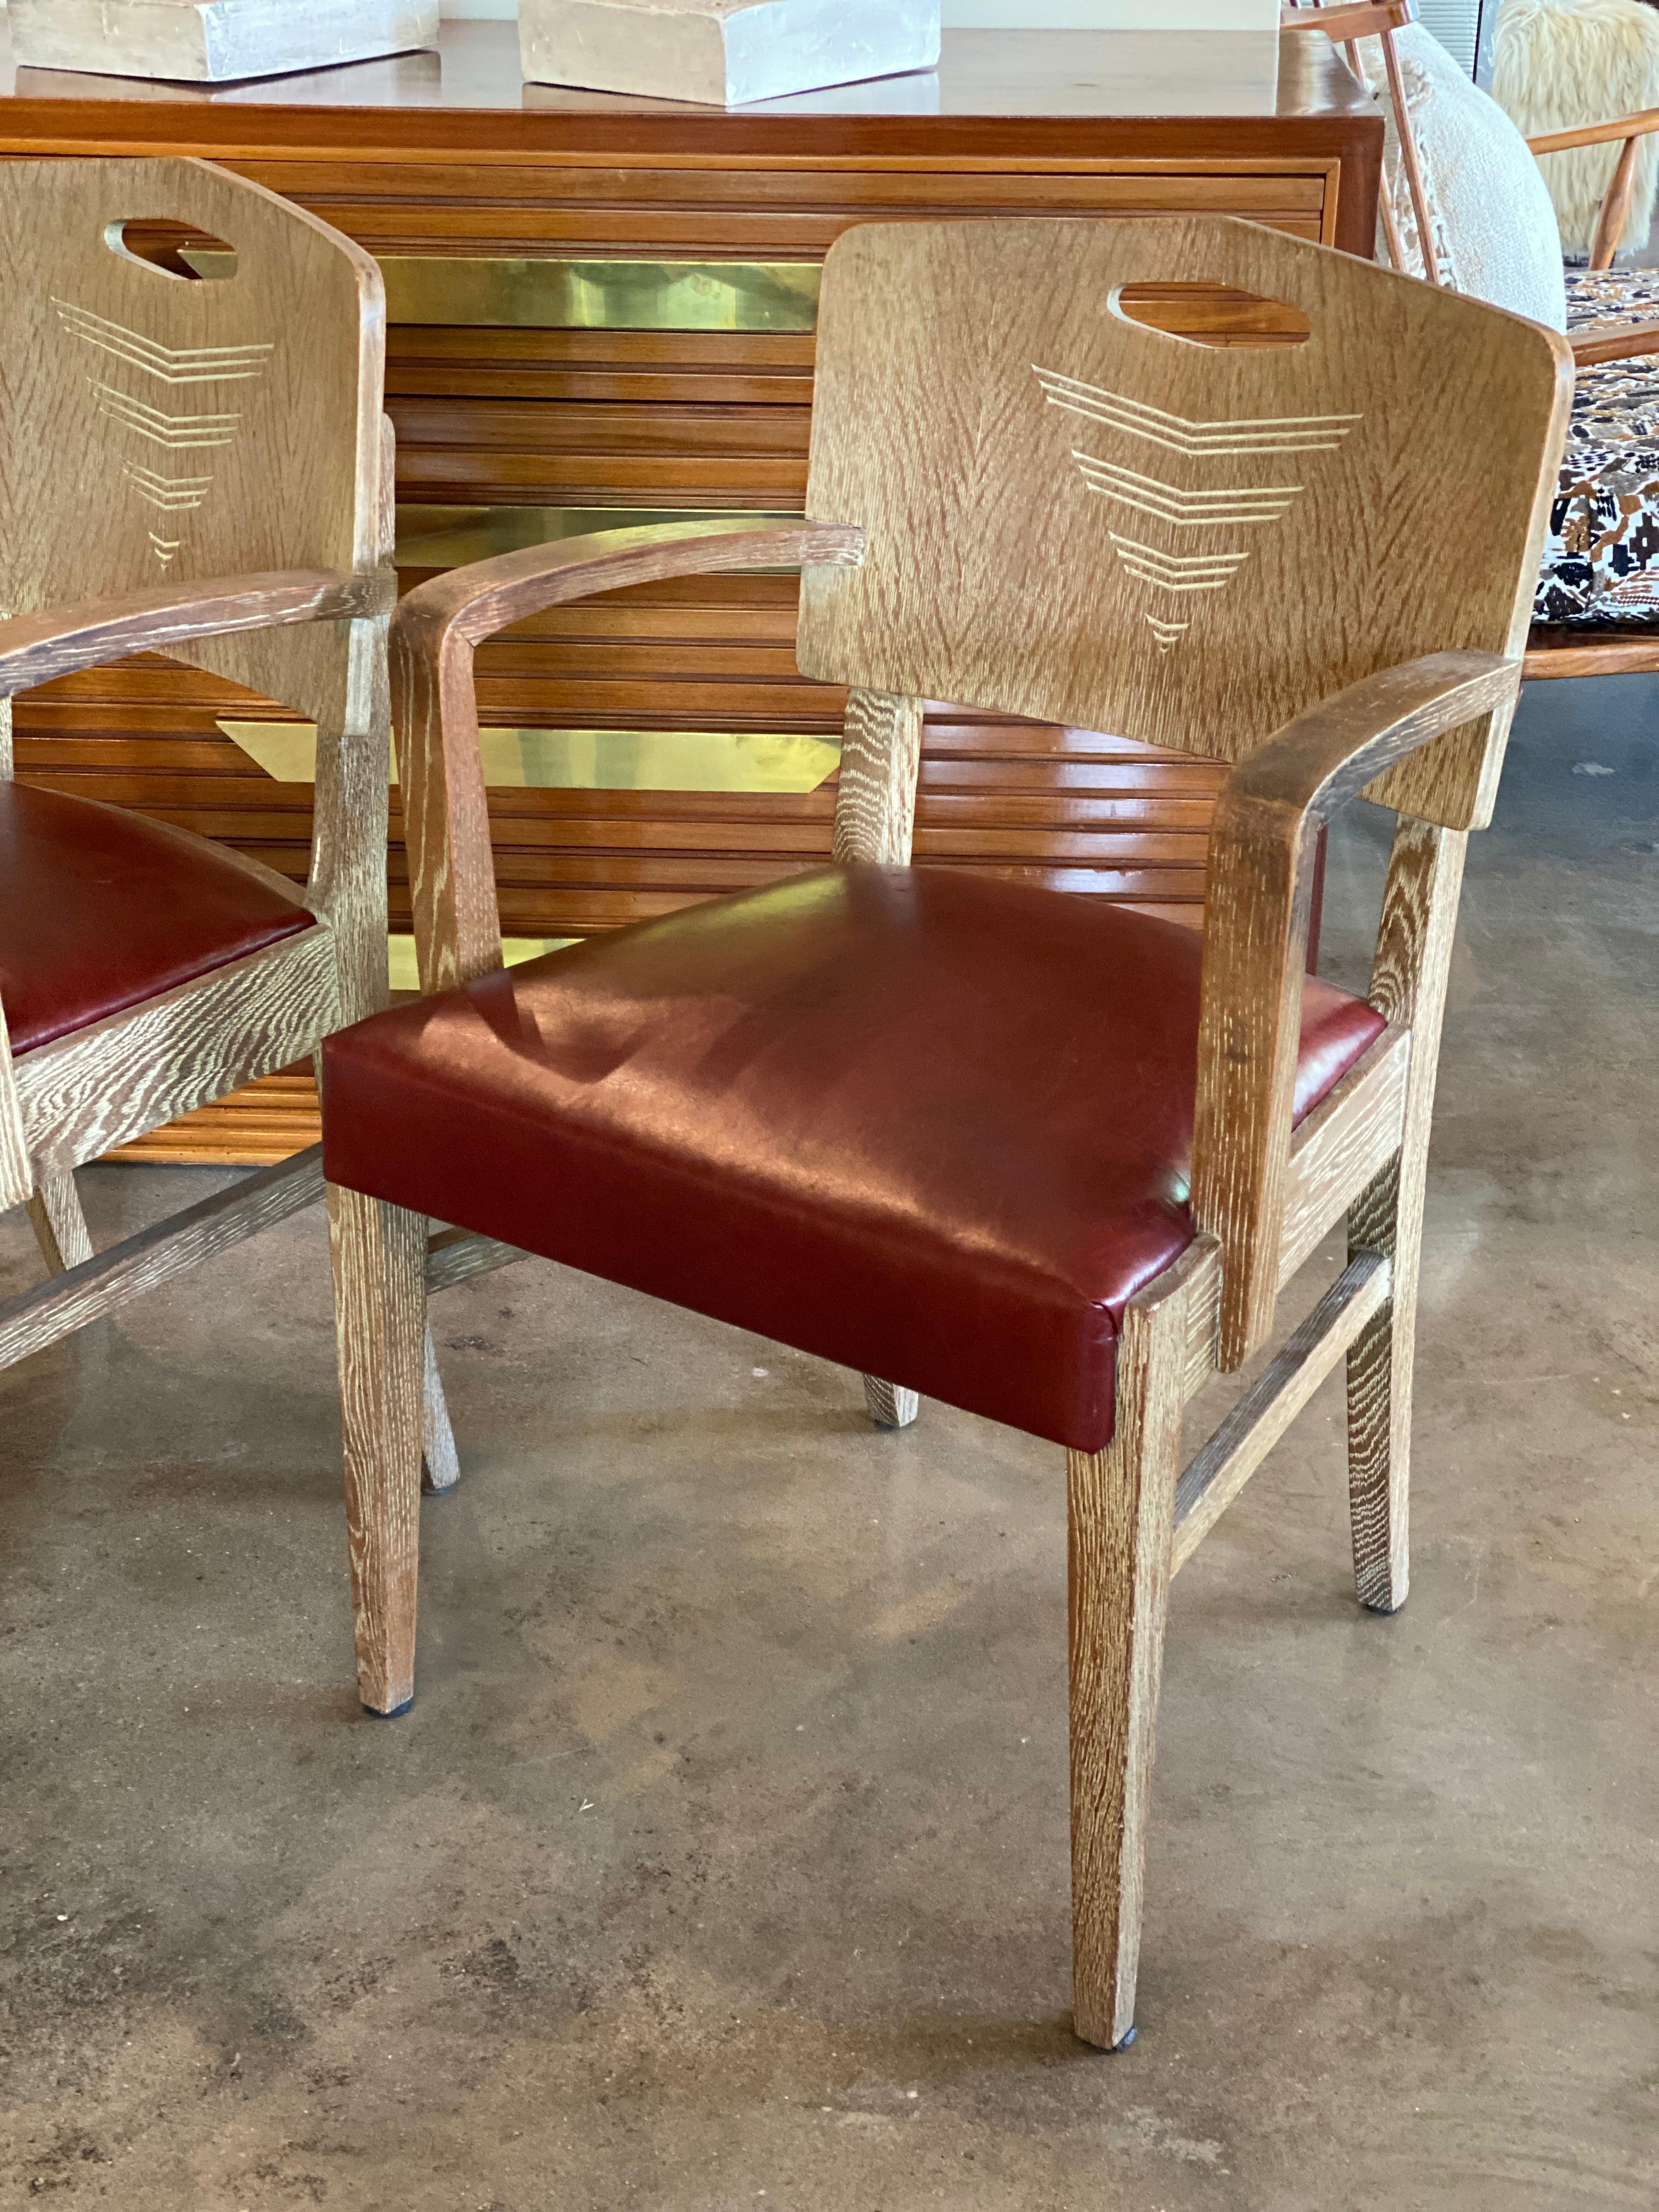 Paire de chaises Art déco en finition cérusée sur chêne, conçues par le célèbre architecte suisse Michel Polak. Sièges nouvellement rembourrés en cuir rouge sang de boeuf/marron. Les chaises sont probablement une fabrication ancienne de Joseph de